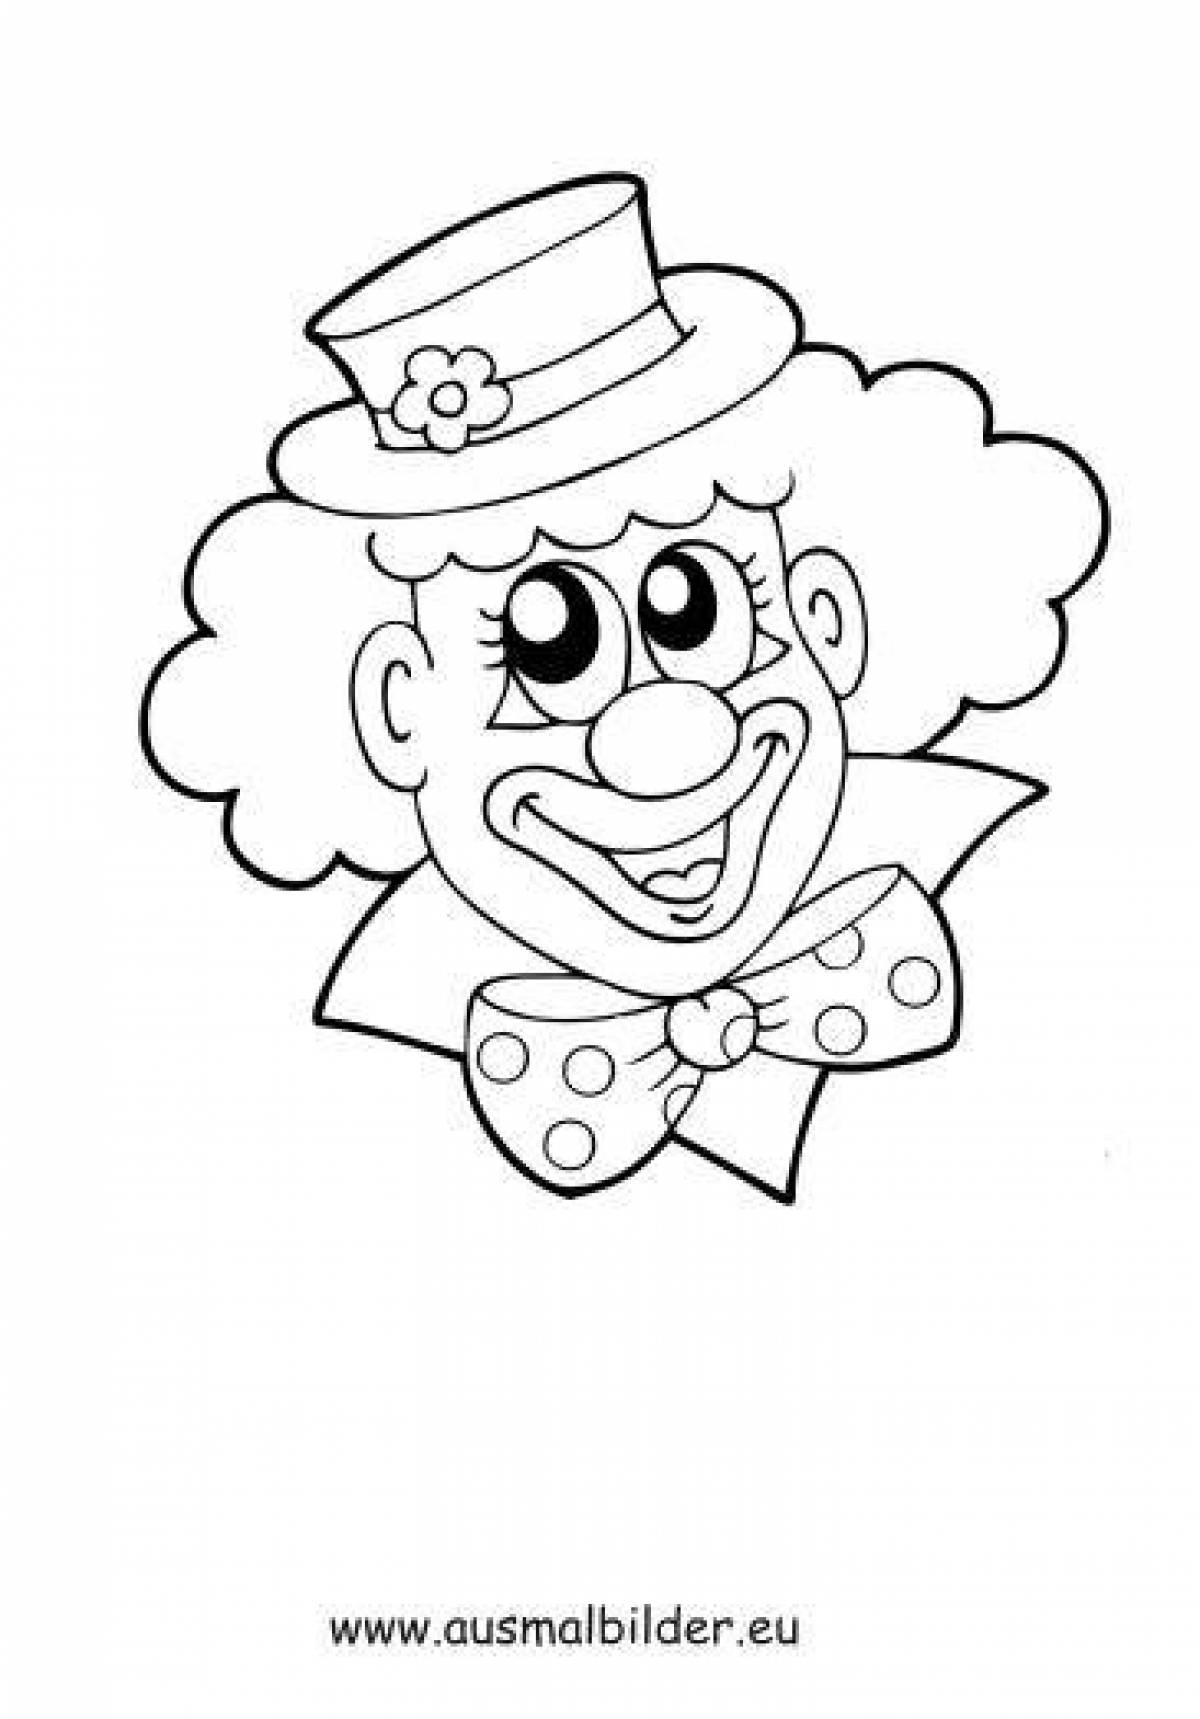 Лицо клоуна раскраска распечатать. Клоун раскраска. Клоун раскраска для детей. Веселый клоун раскраска. Раскраска весёлый клоун для детей.